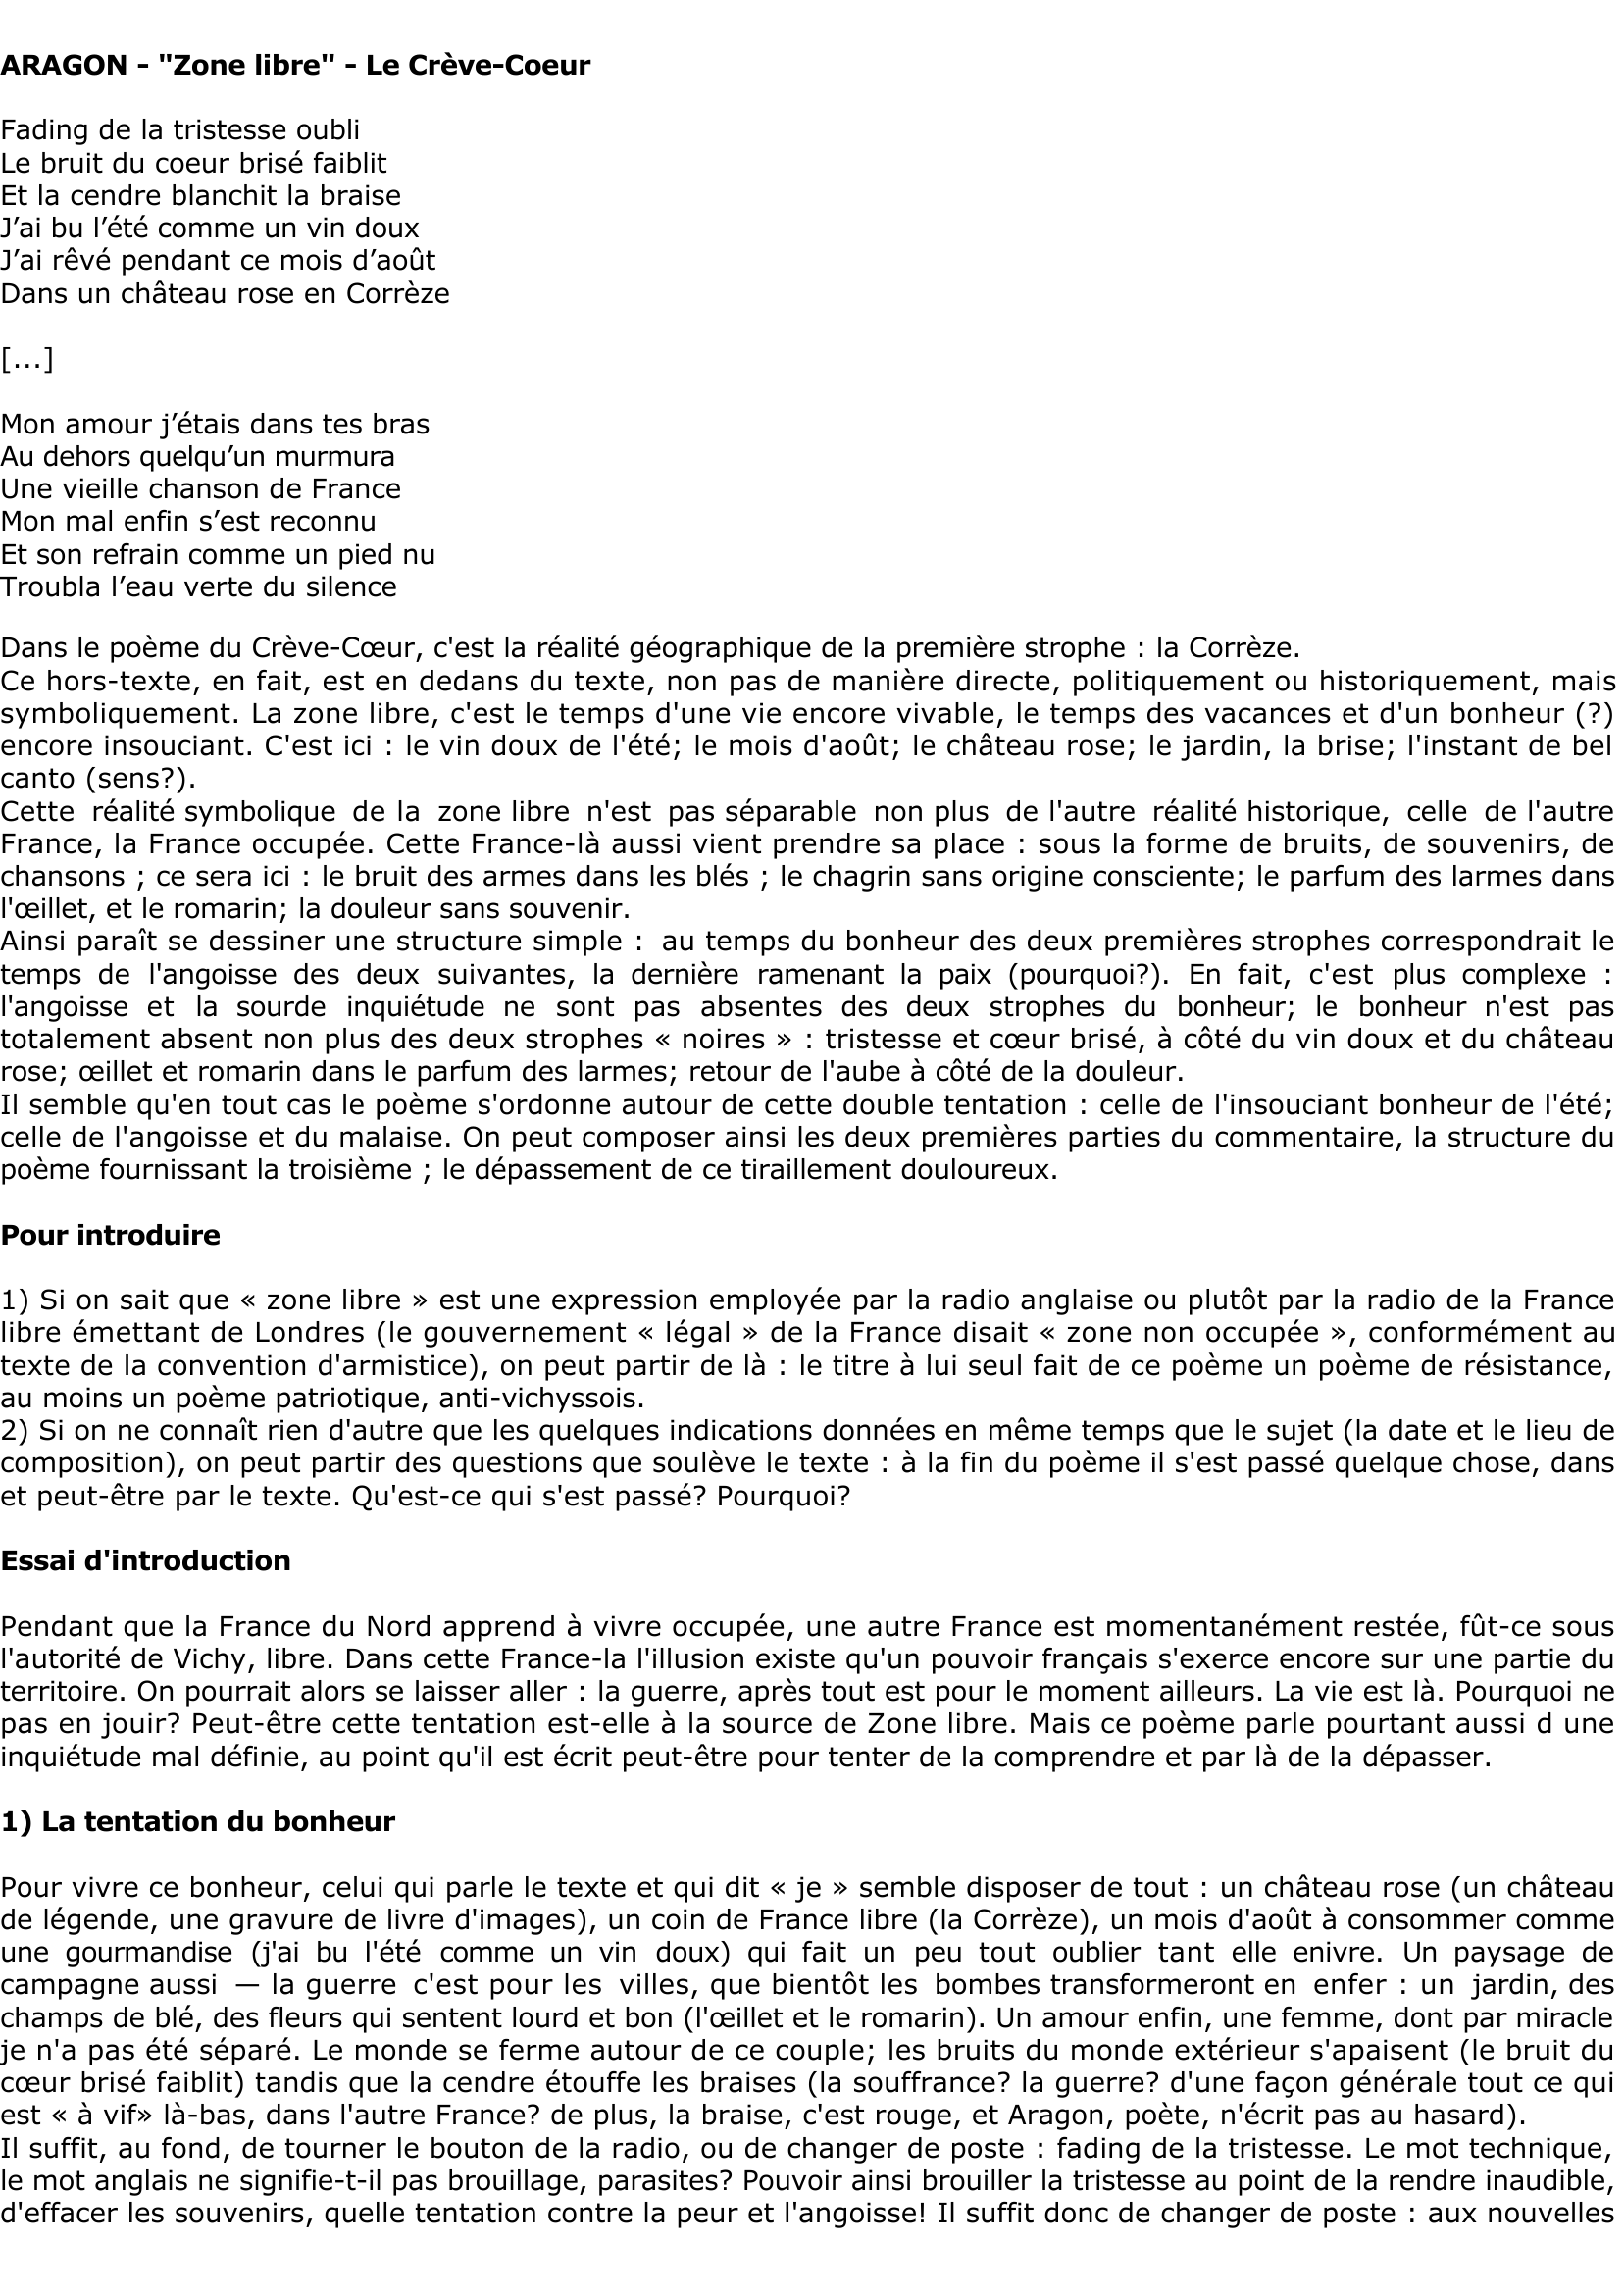 Prévisualisation du document ARAGON - "Zone libre" - Le Crève-Coeur